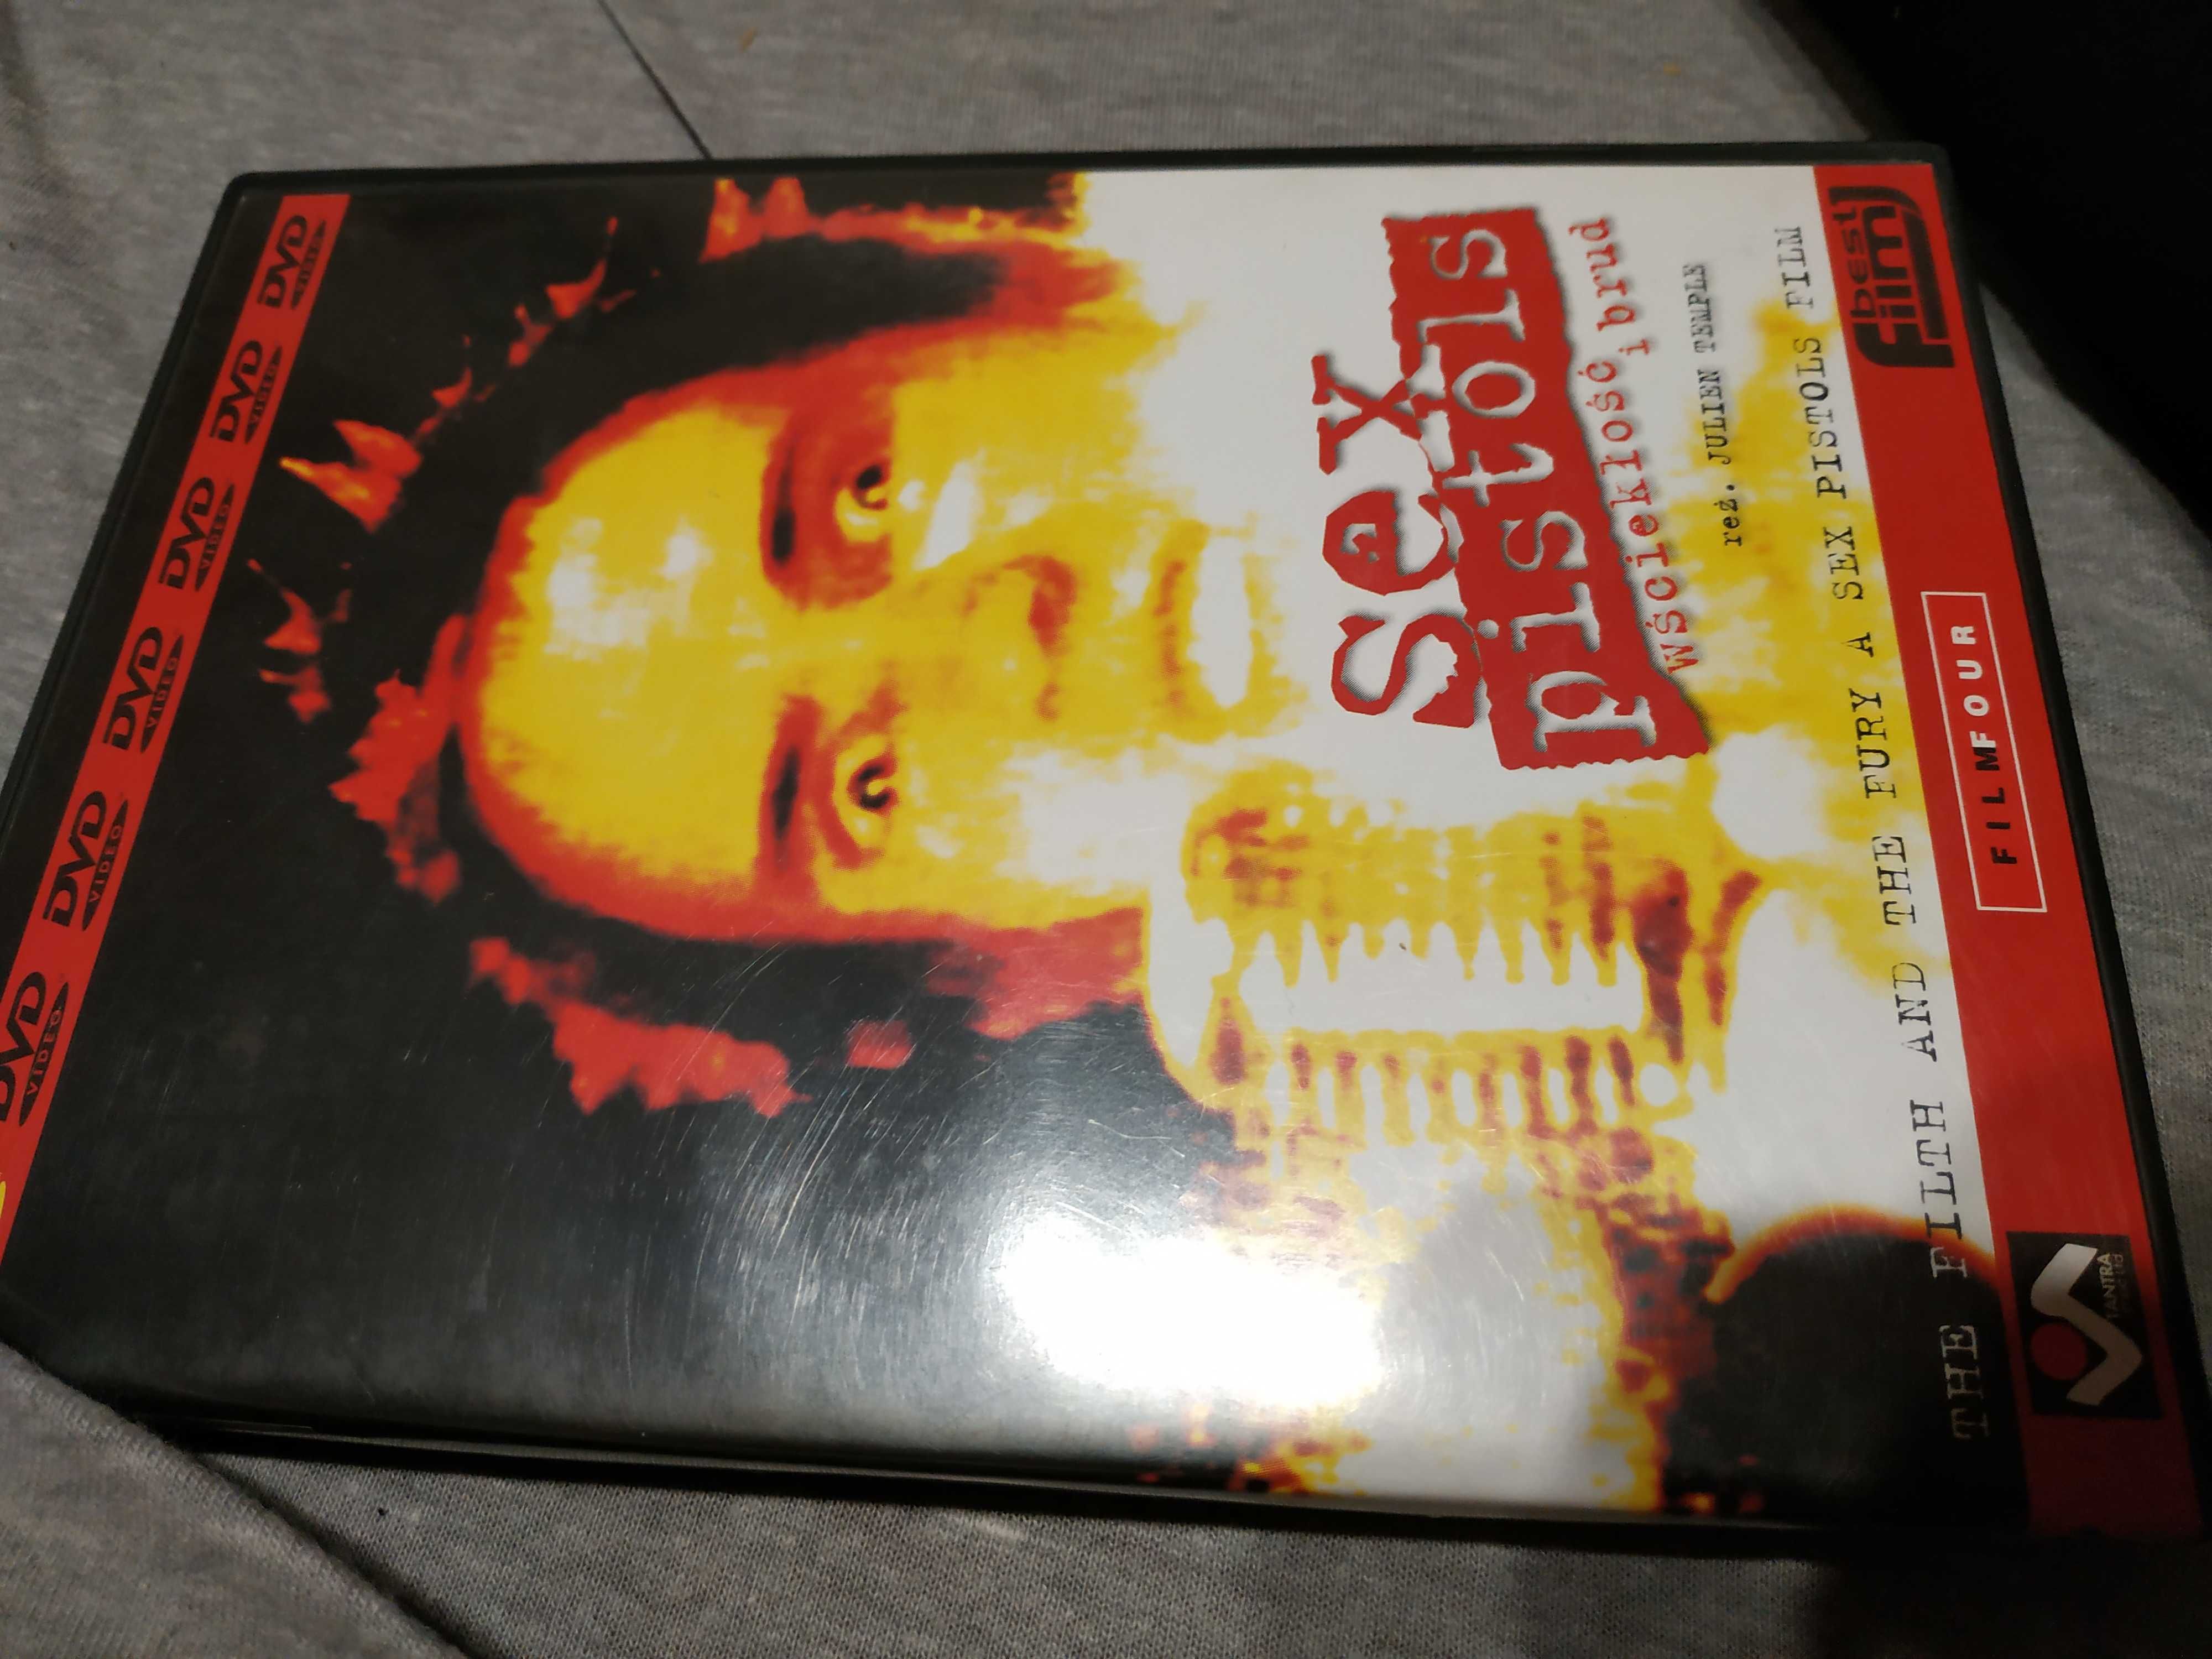 Sex Pistols Wściekłość i brud DVD